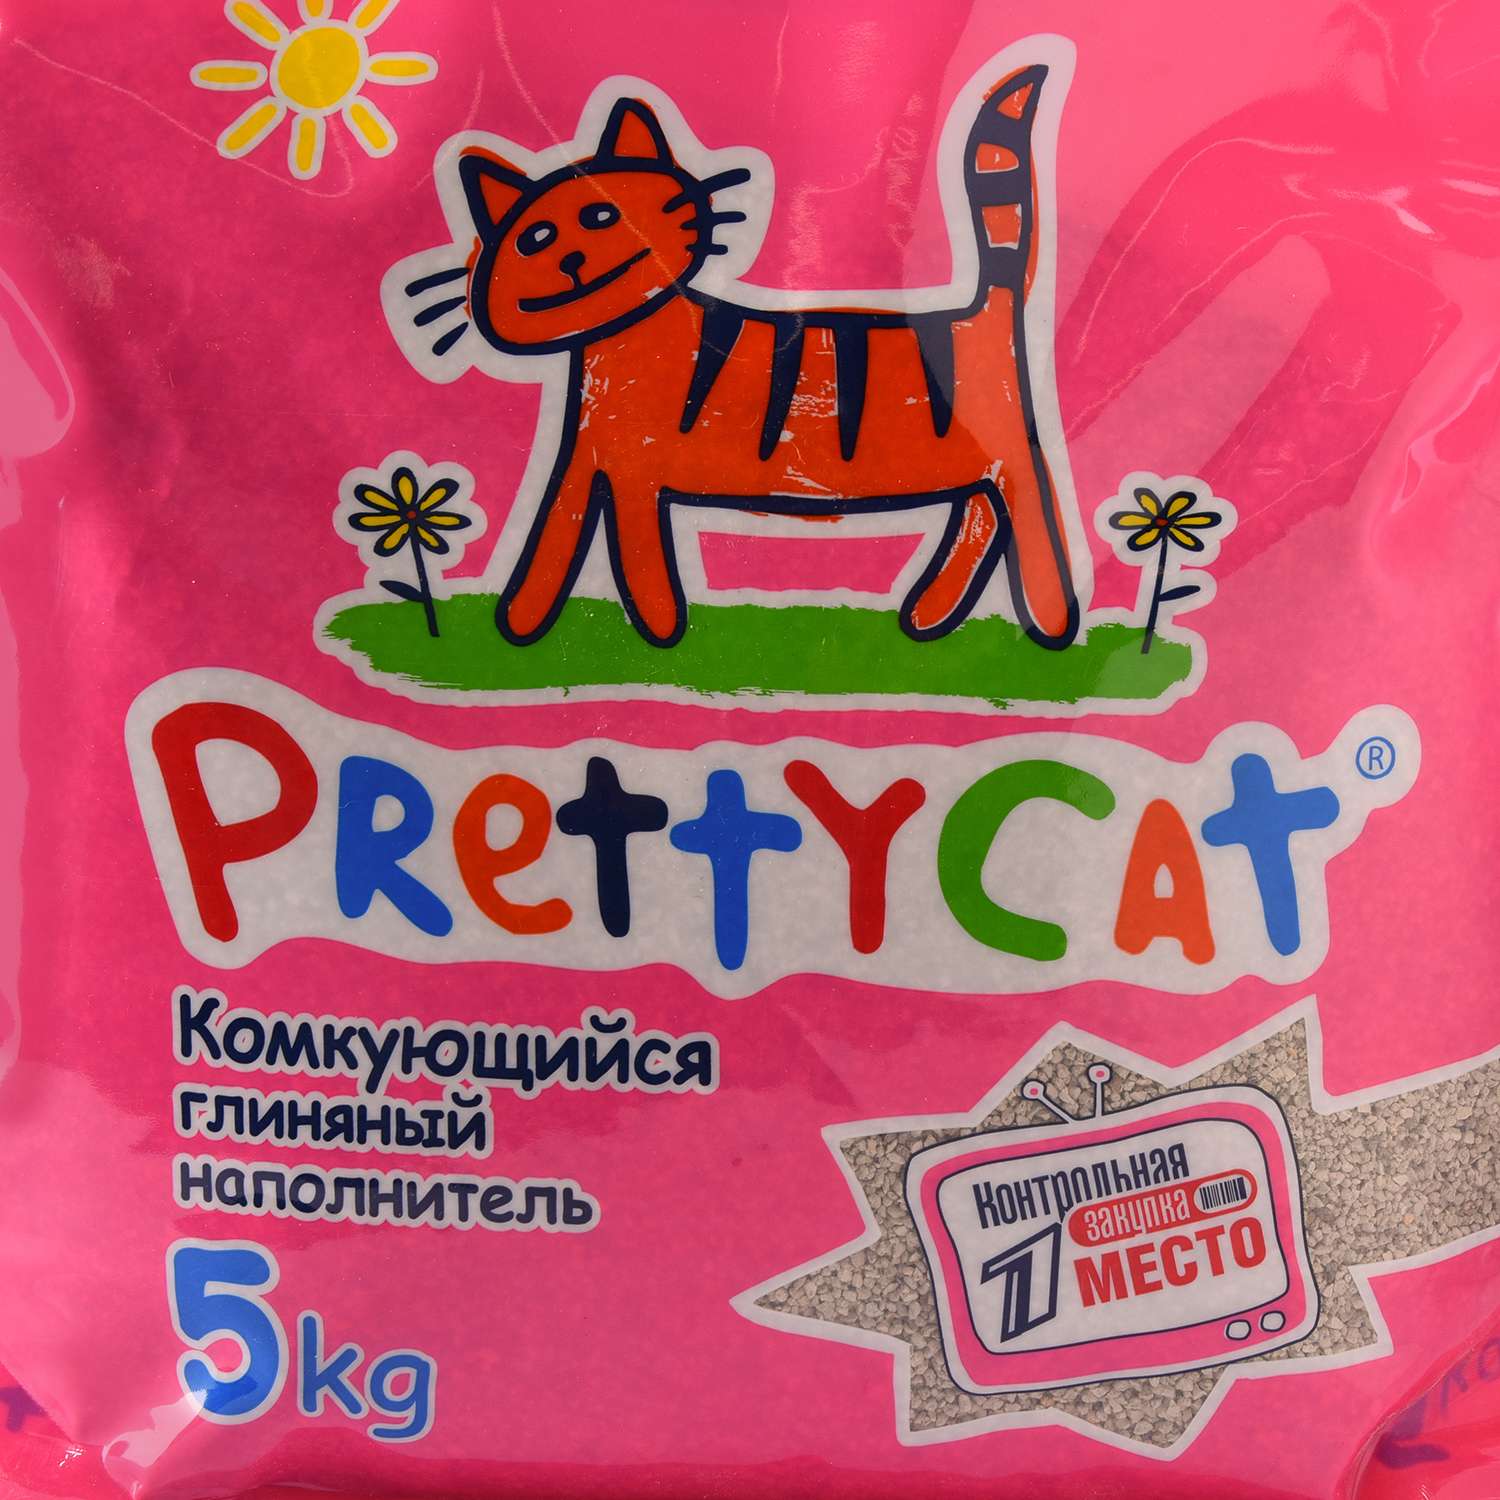 Наполнитель для кошек PrettyCat Euro Mix комкующийся 5кг - фото 4